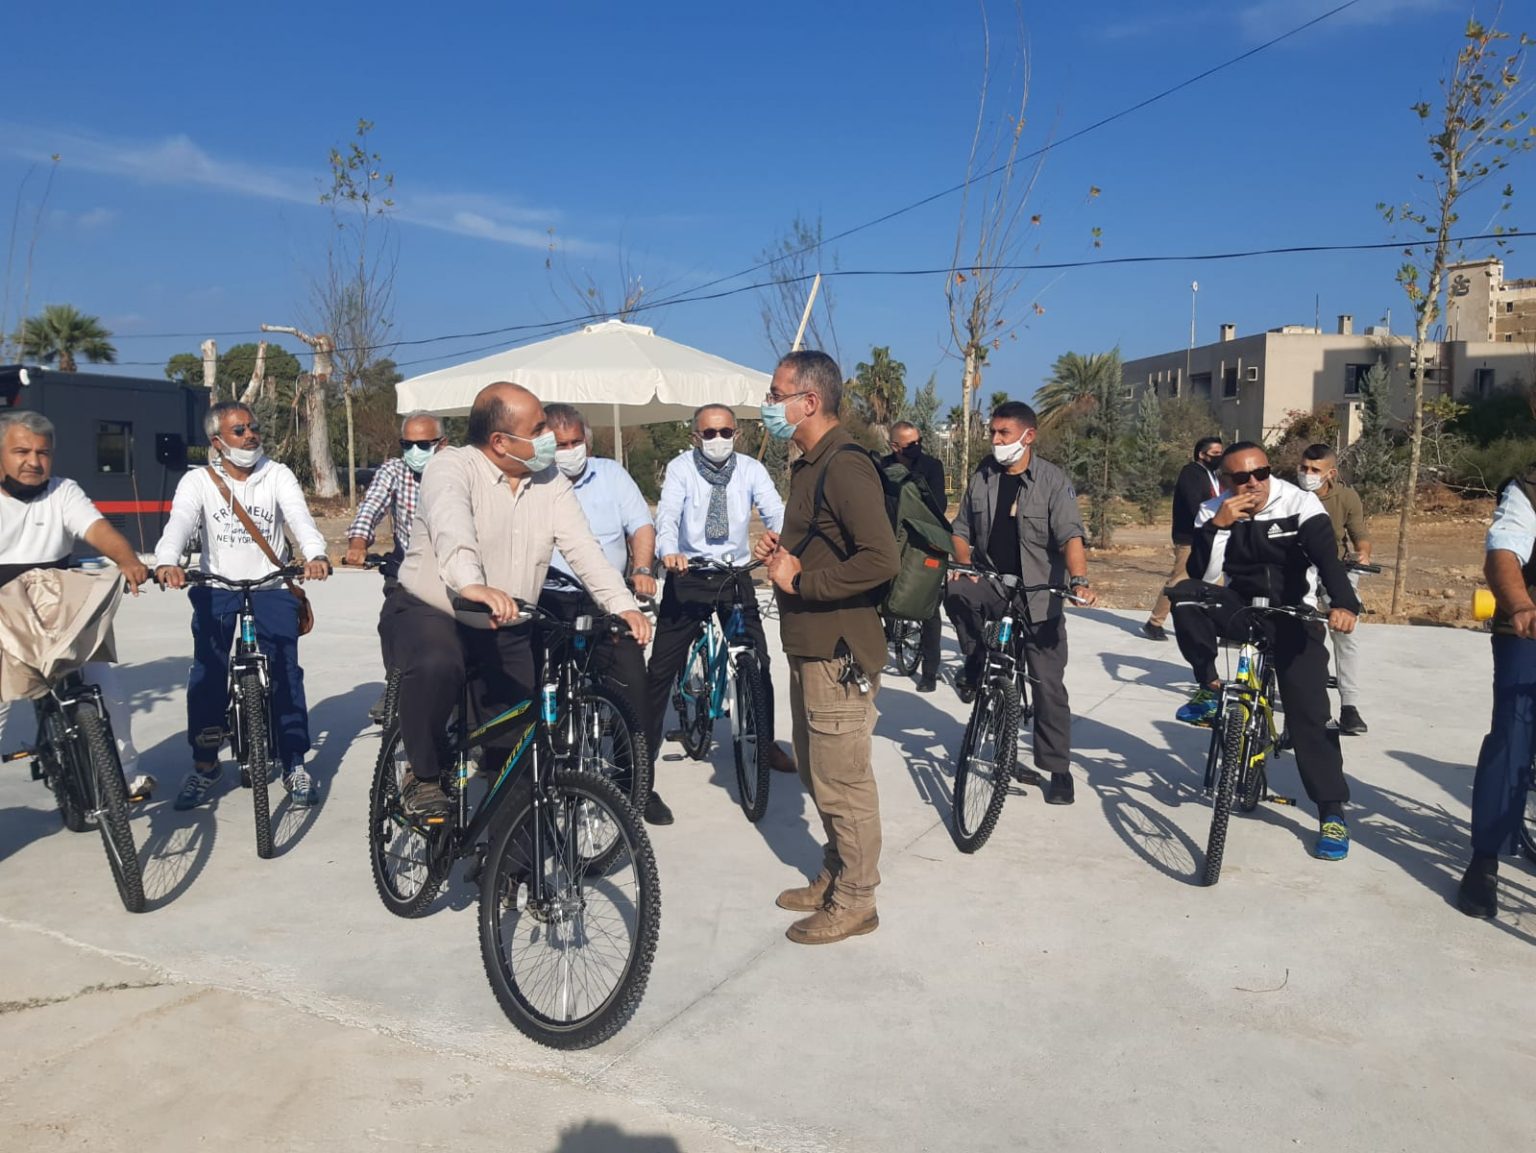 Büyükelçi Başçeri, Maraş’ı ziyaret ederek, halkla birlikte bisiklet turuna katıldı